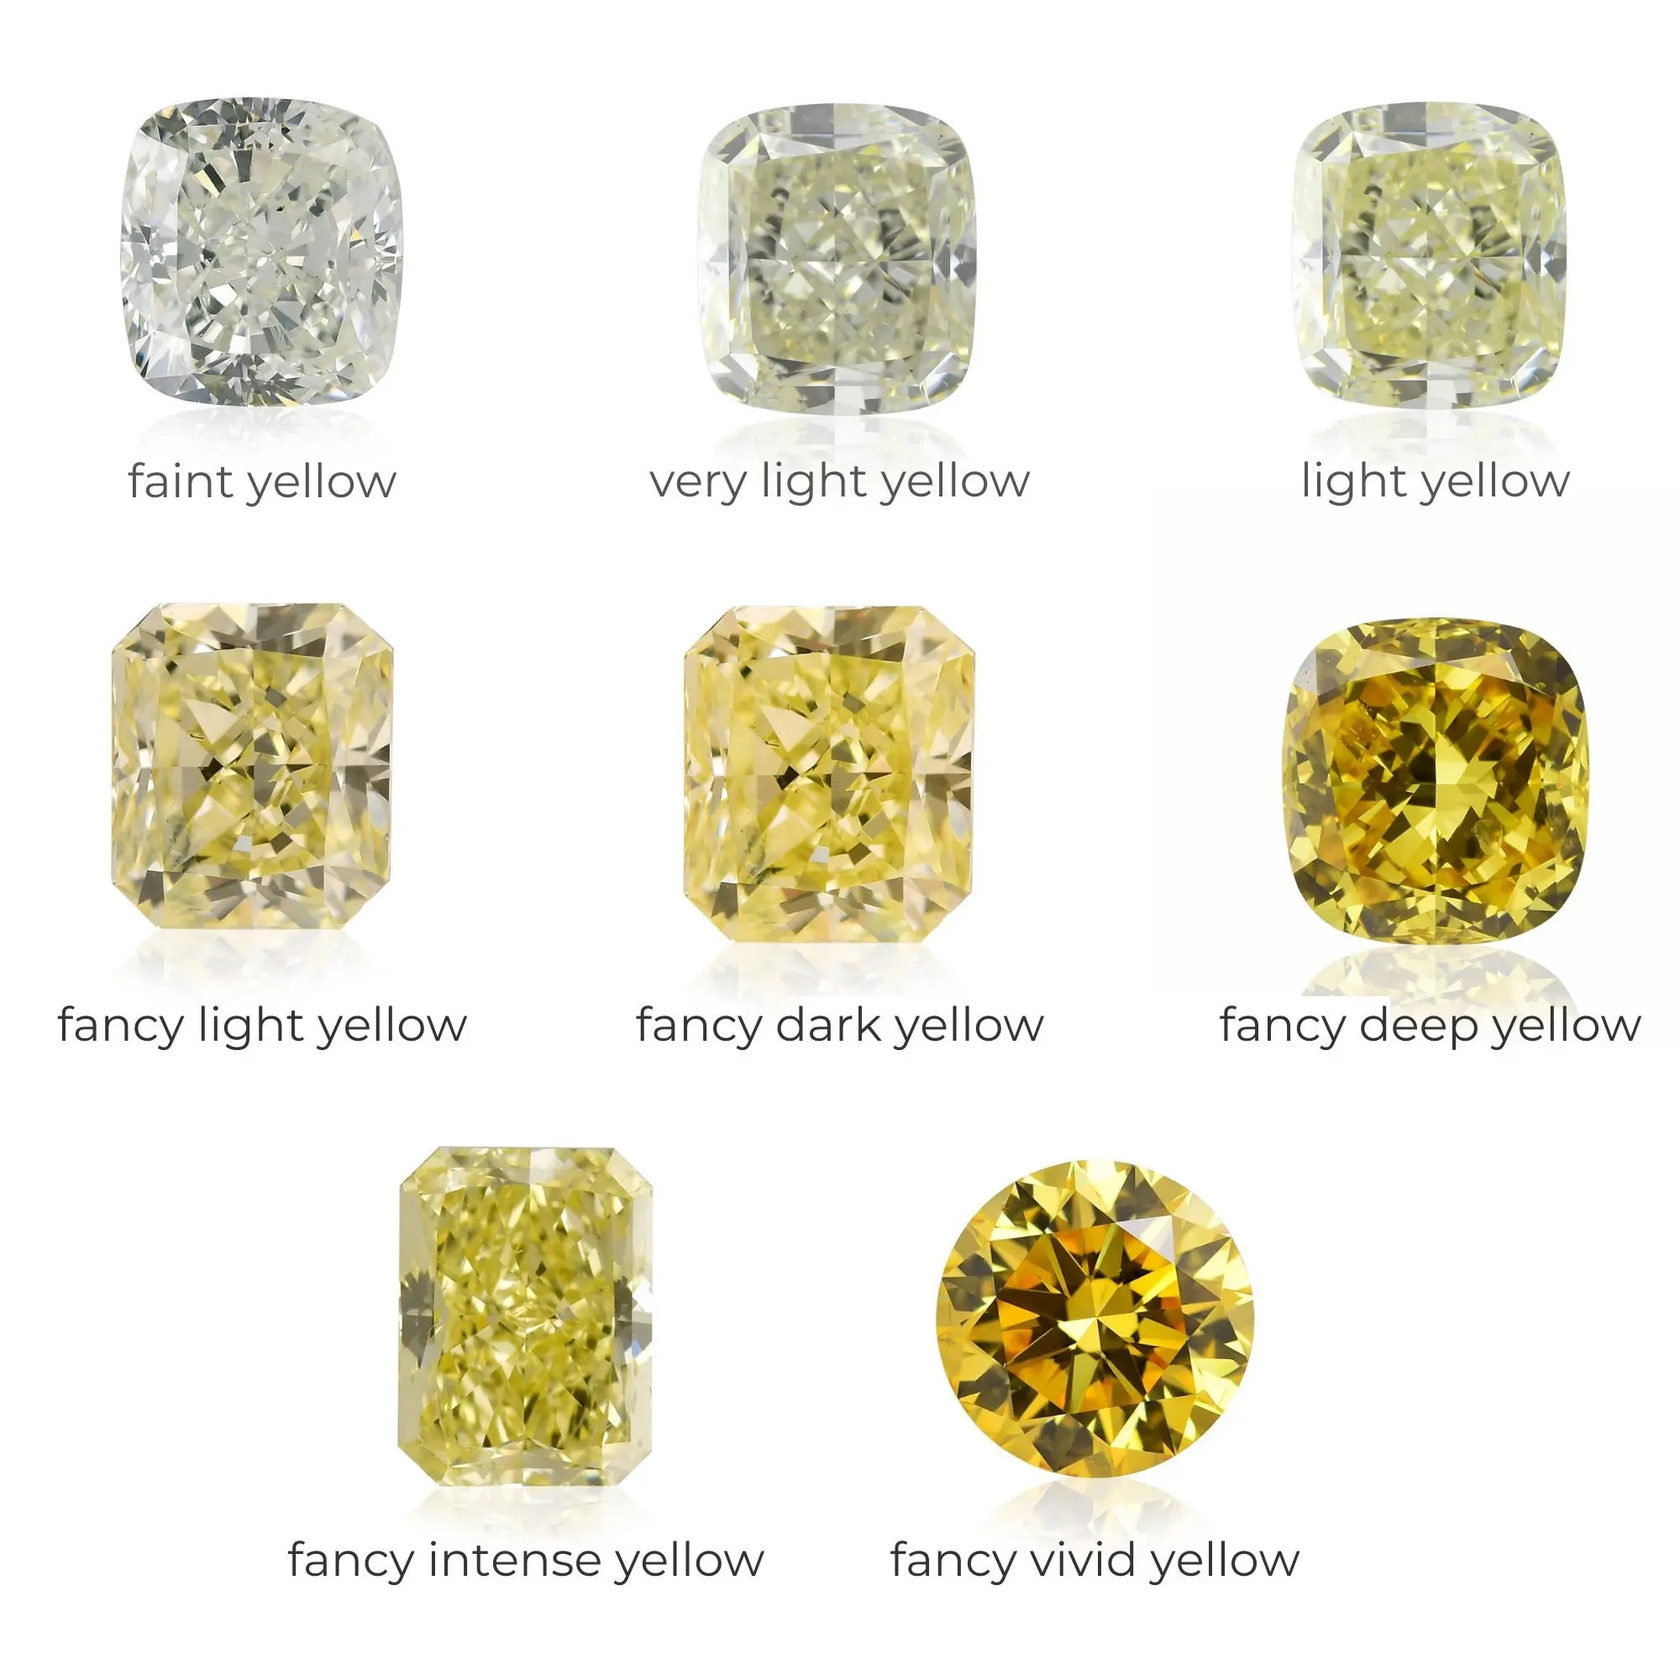 Градация интенсивности желтого цвета для бриллиантов от faint yellow до fancy vivid